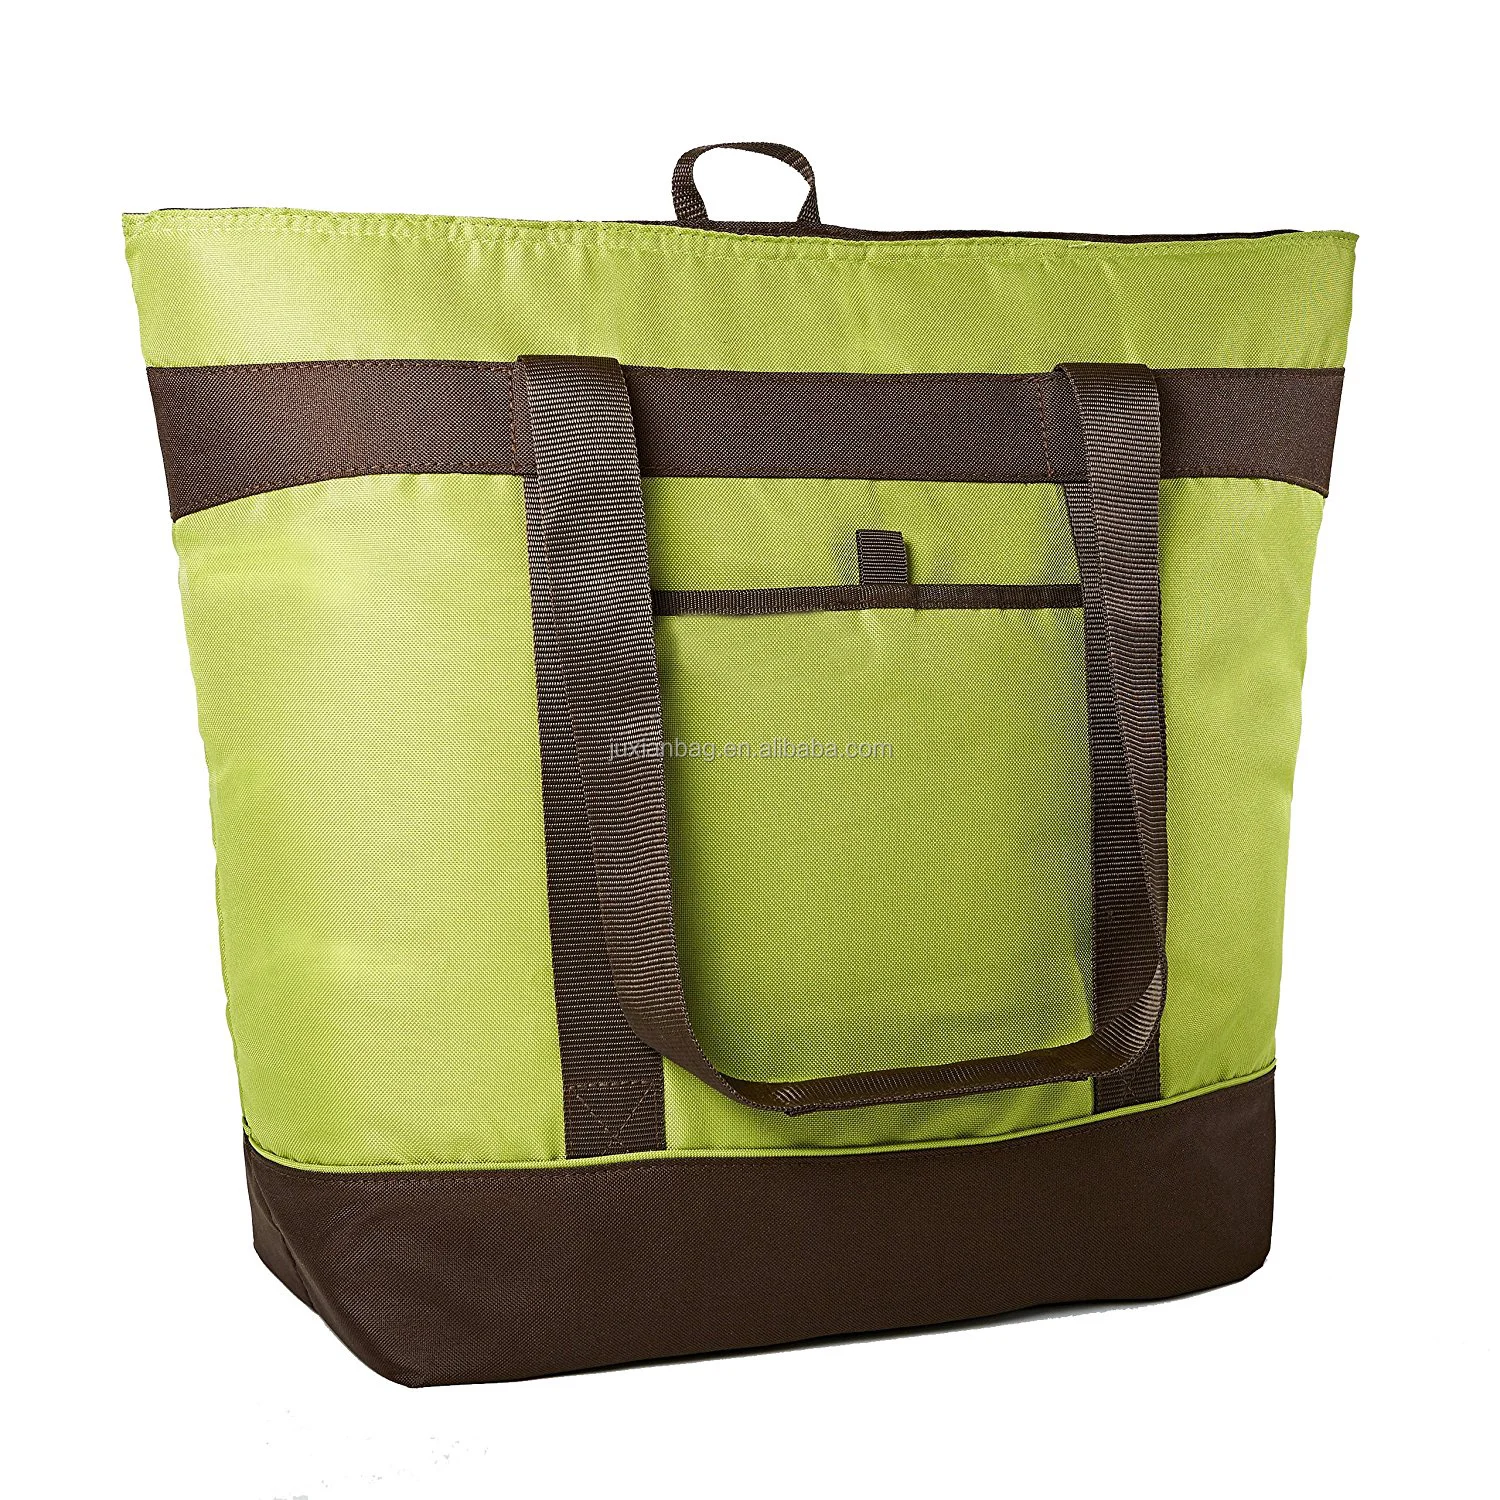 可重复使用的绝缘食品袋重型可折叠购物尼龙热手提袋